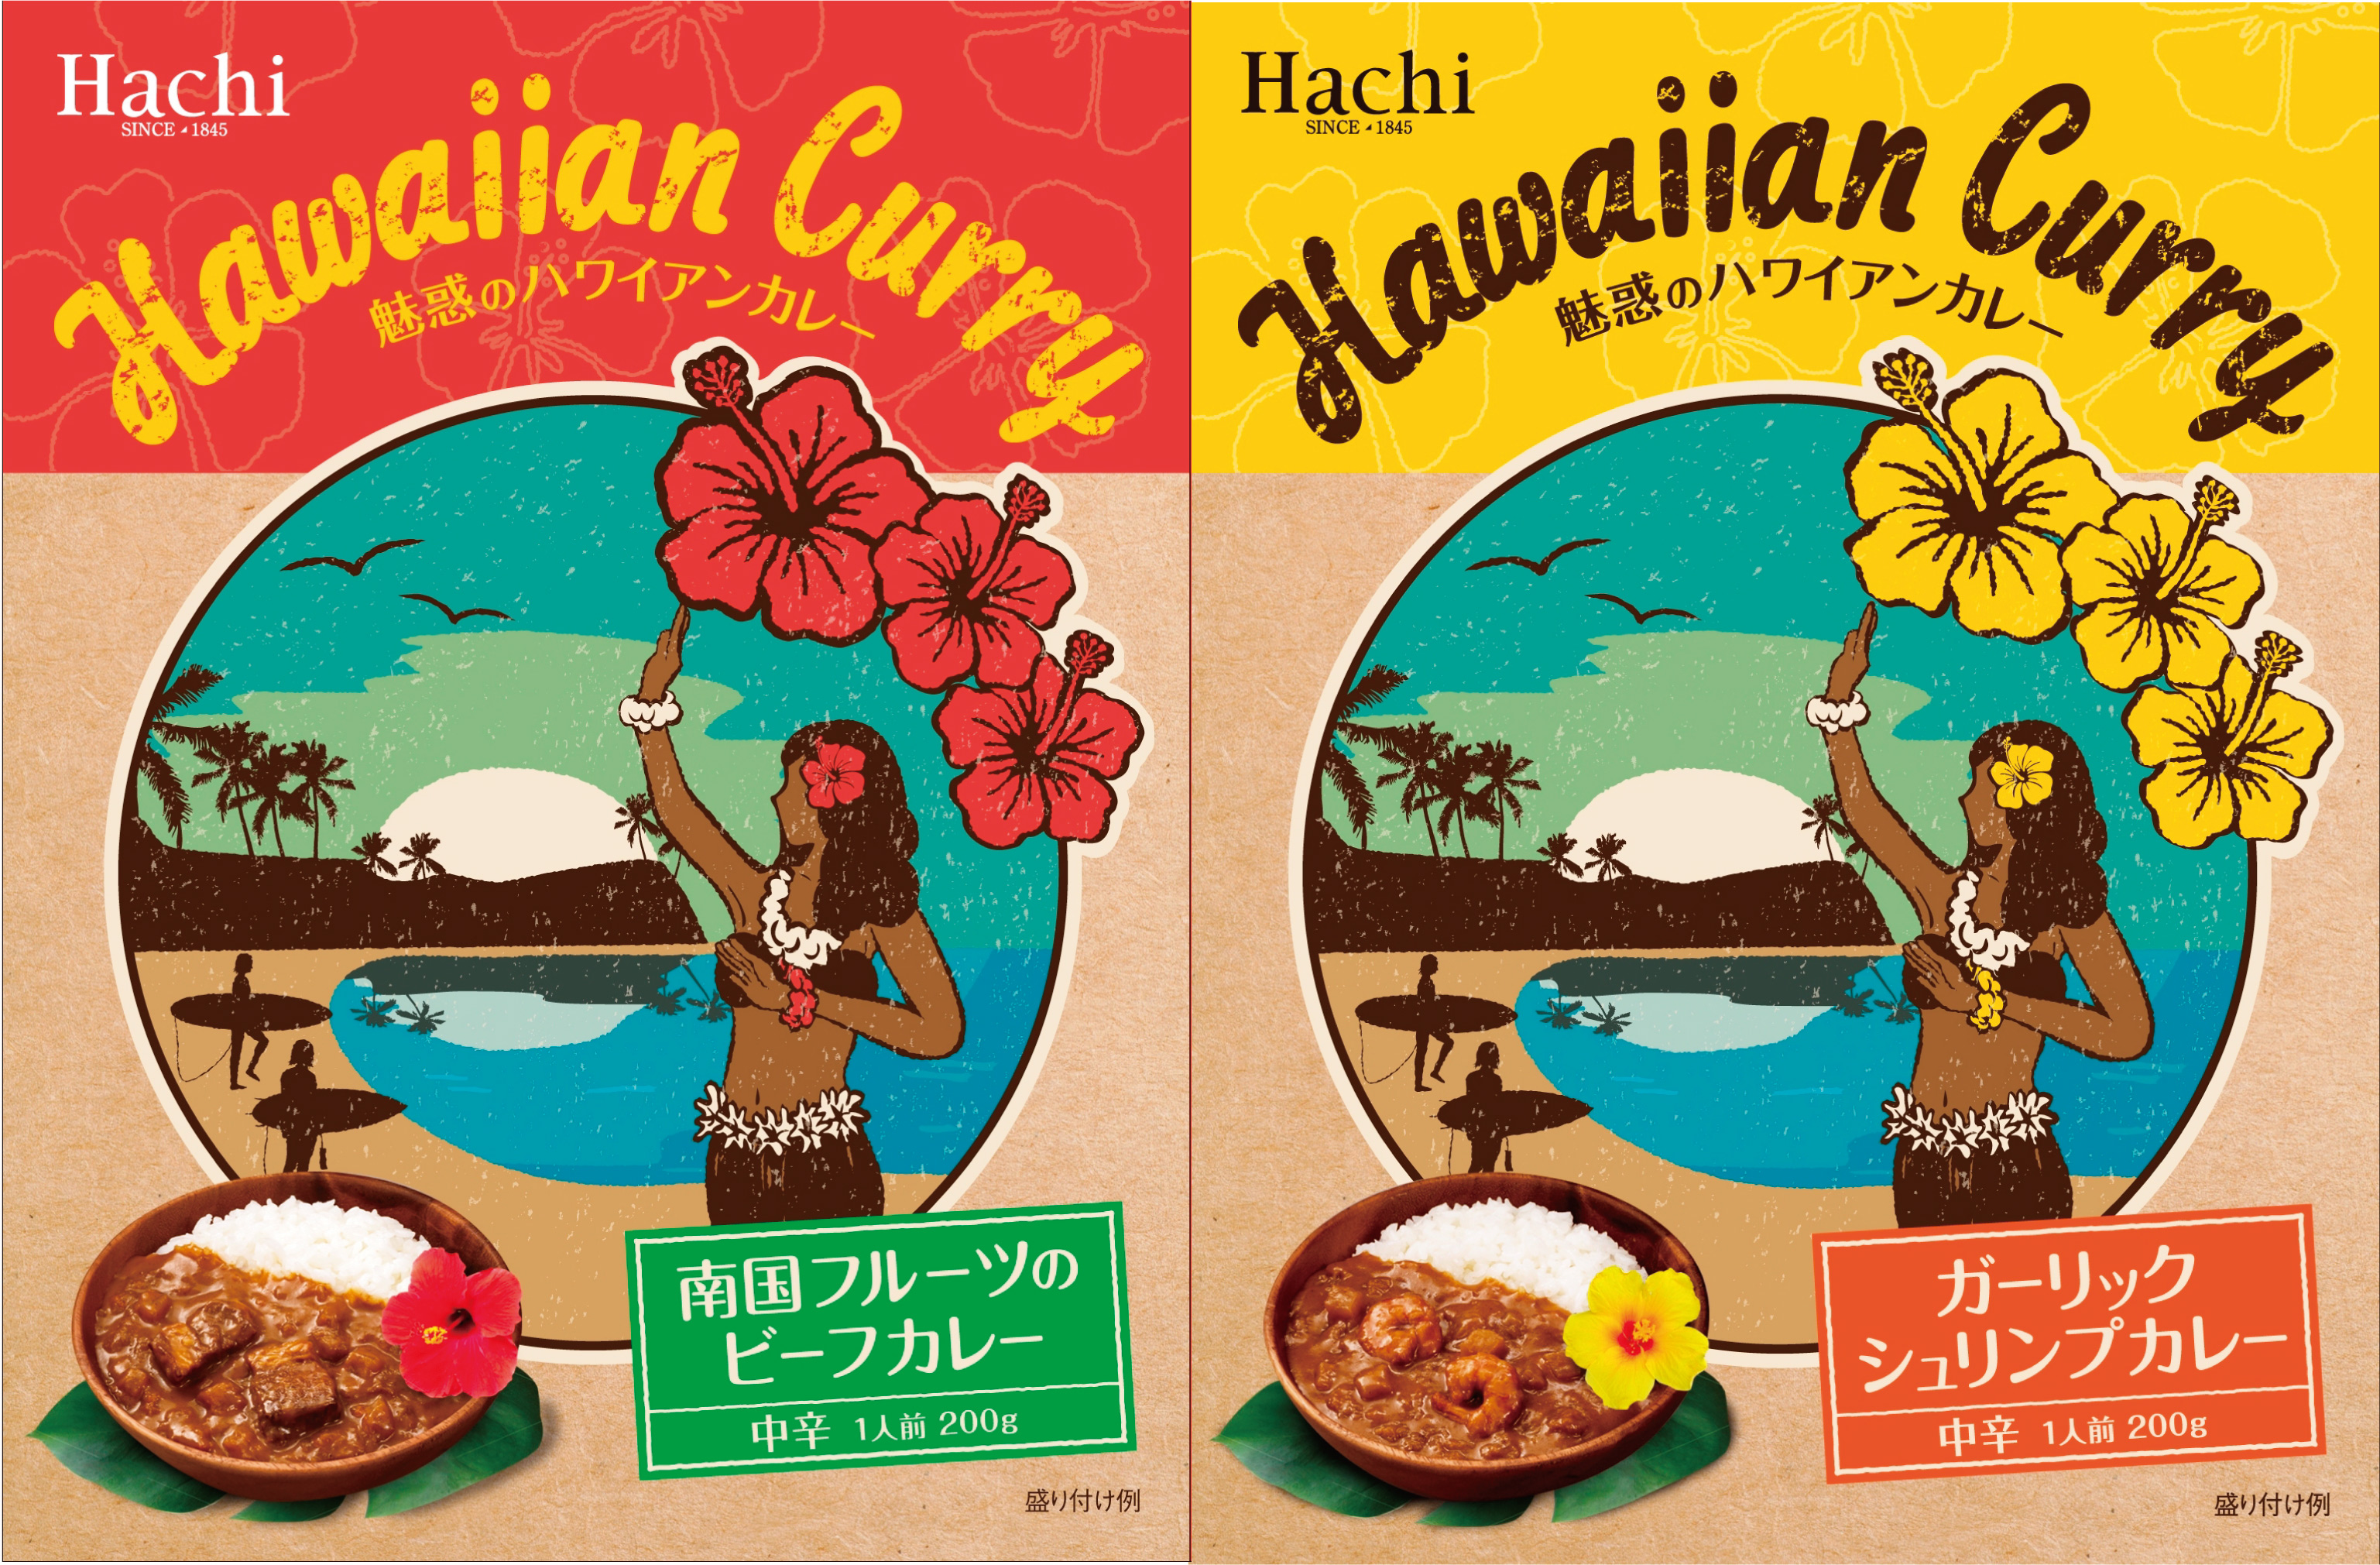 ハワイ好きが作ったハワイを感じるカレー ガーリックシュリンプカレー 南国フルーツのビーフカレー 2種類を2月22日新発売 ハチ食品 Hachi のレトルトカレー レトルト食品